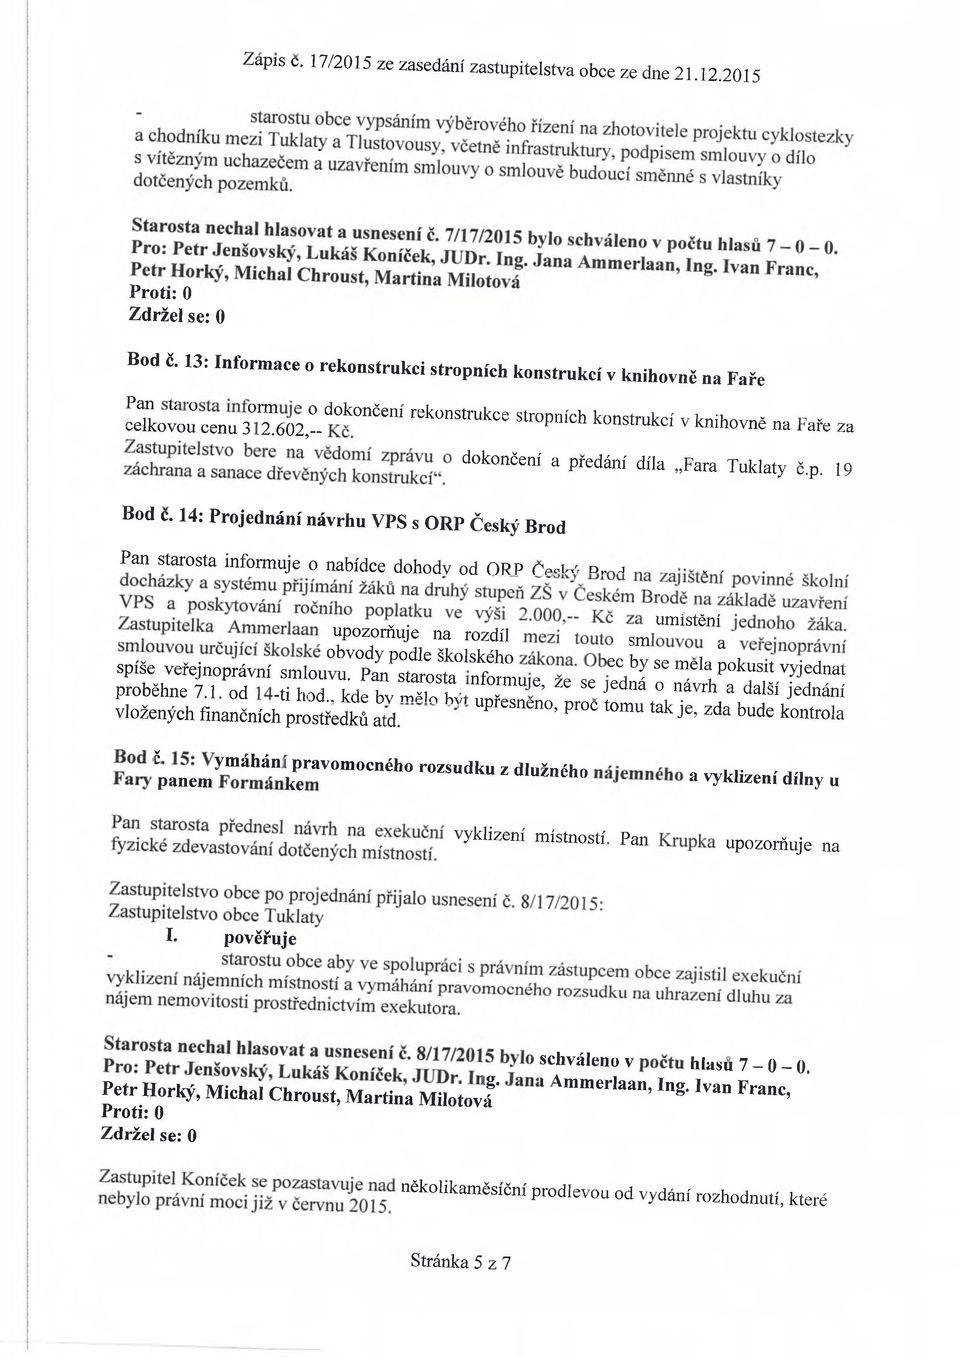 14: Projednání návrhu VPS s ORP Český Brod Pan starosta informuje o nabídce dohodv od ORP r Pc U n,. j, r s t ; r a spíše veřejnoprávní smlouvu Pan f CC by se mela Pokusit vyjednat proběhne 7.1.P0S r ii r ^ S t!